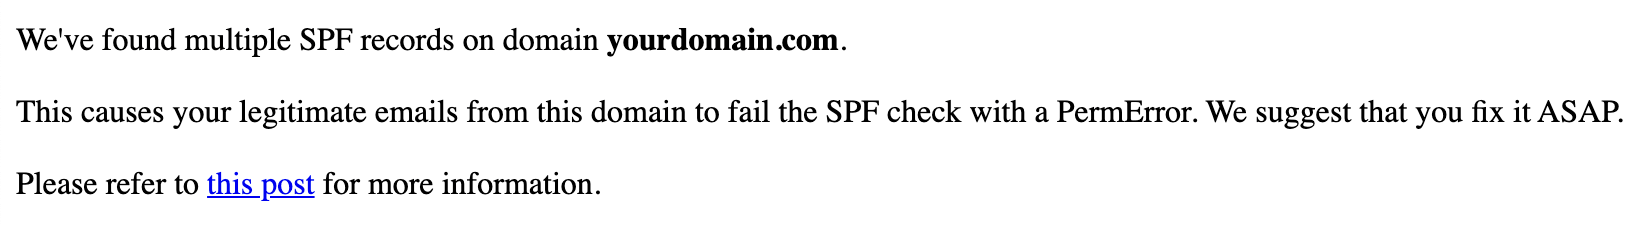 Waarschuwing voor meerdere SPF-records op domein